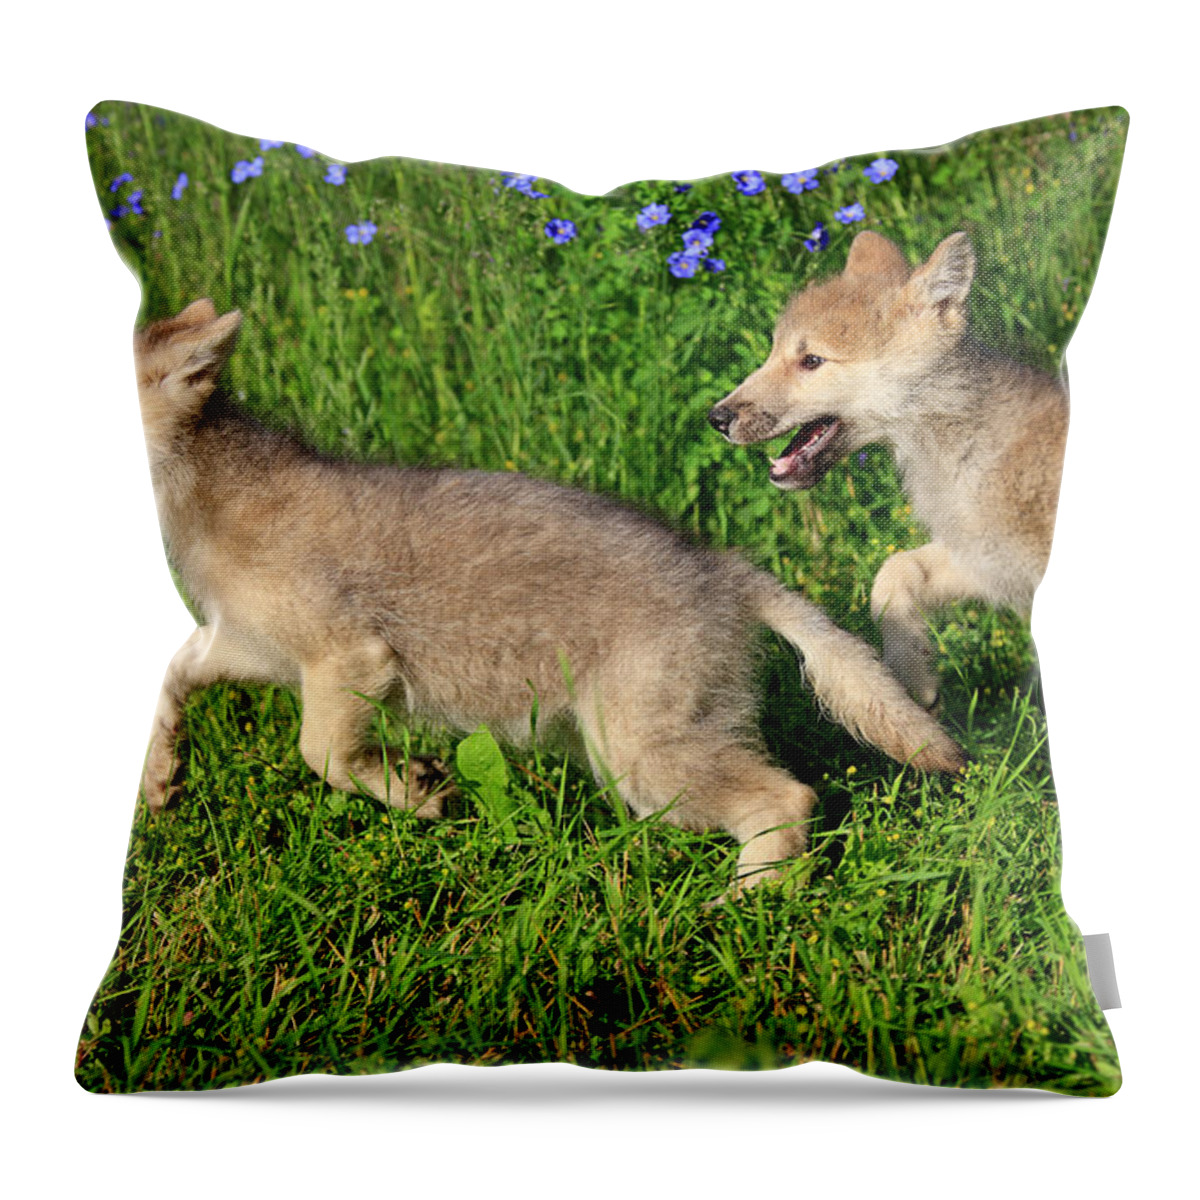 Grass Throw Pillow featuring the photograph Gray Wolfs by Tier Und Naturfotografie J Und C Sohns